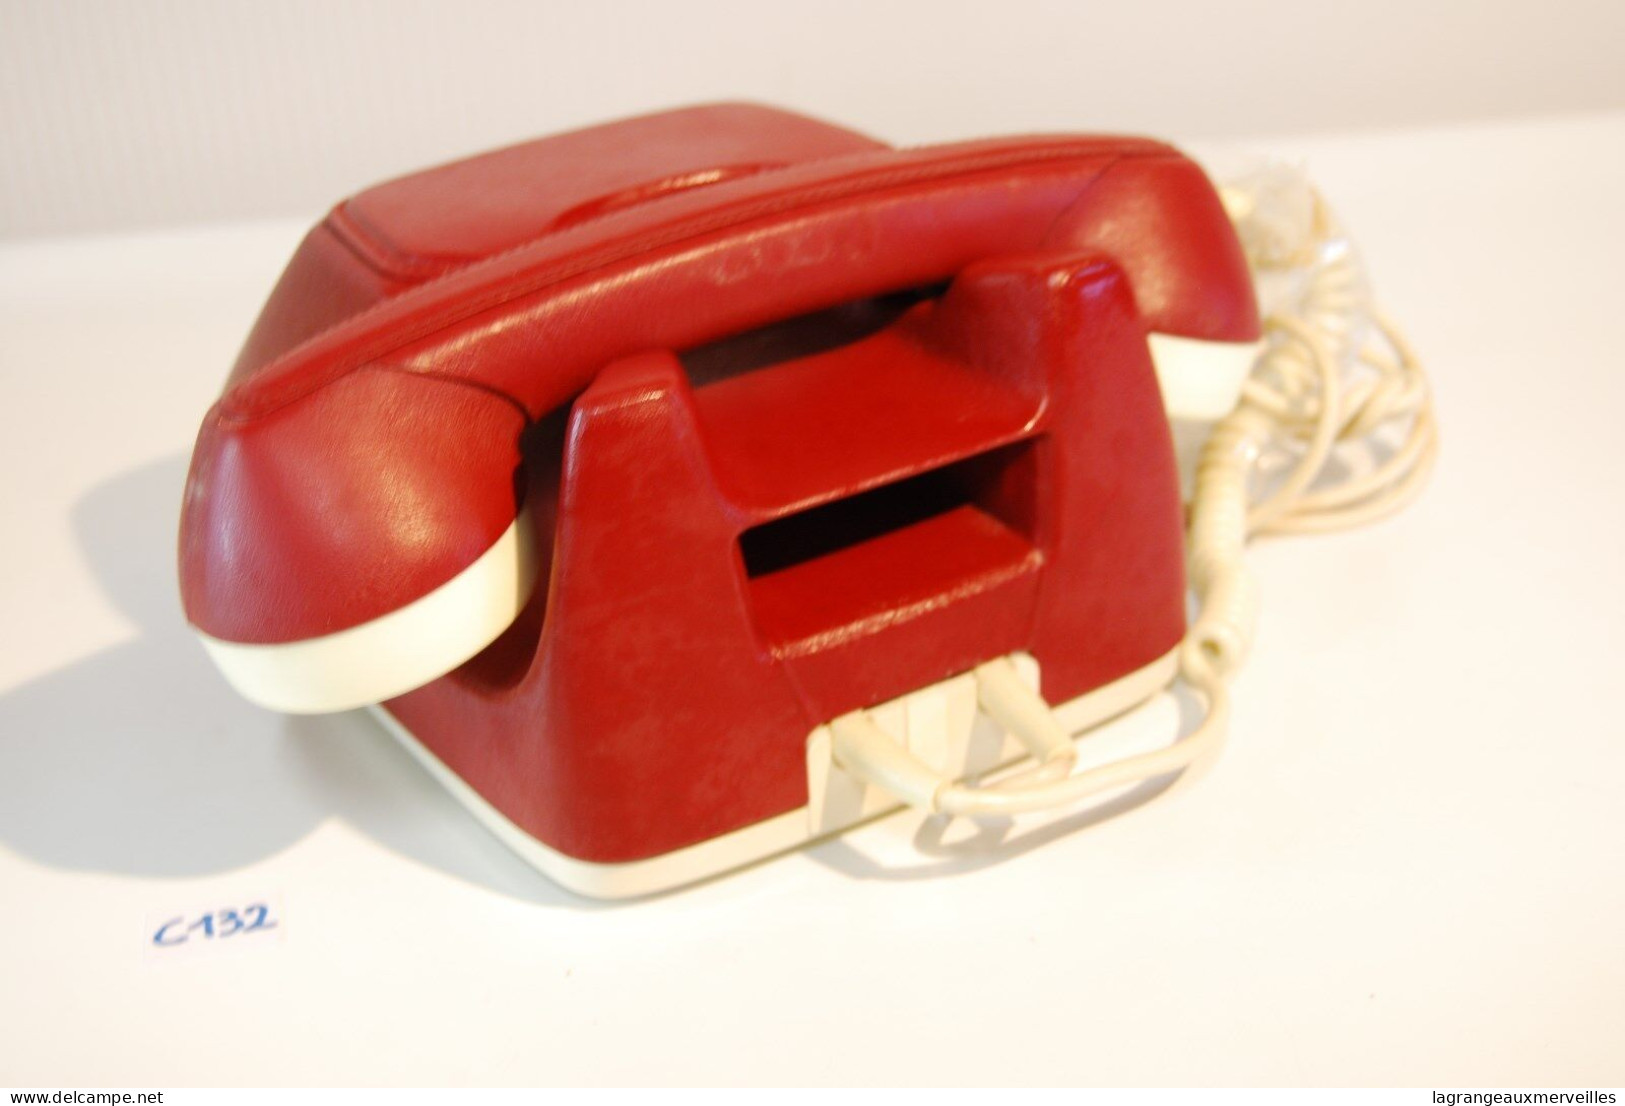 C132 Vintage Retro Phone FEUER NOTRUF Germany LUXE EN CUIR Leather ROUGE GRENAT - Telefonía